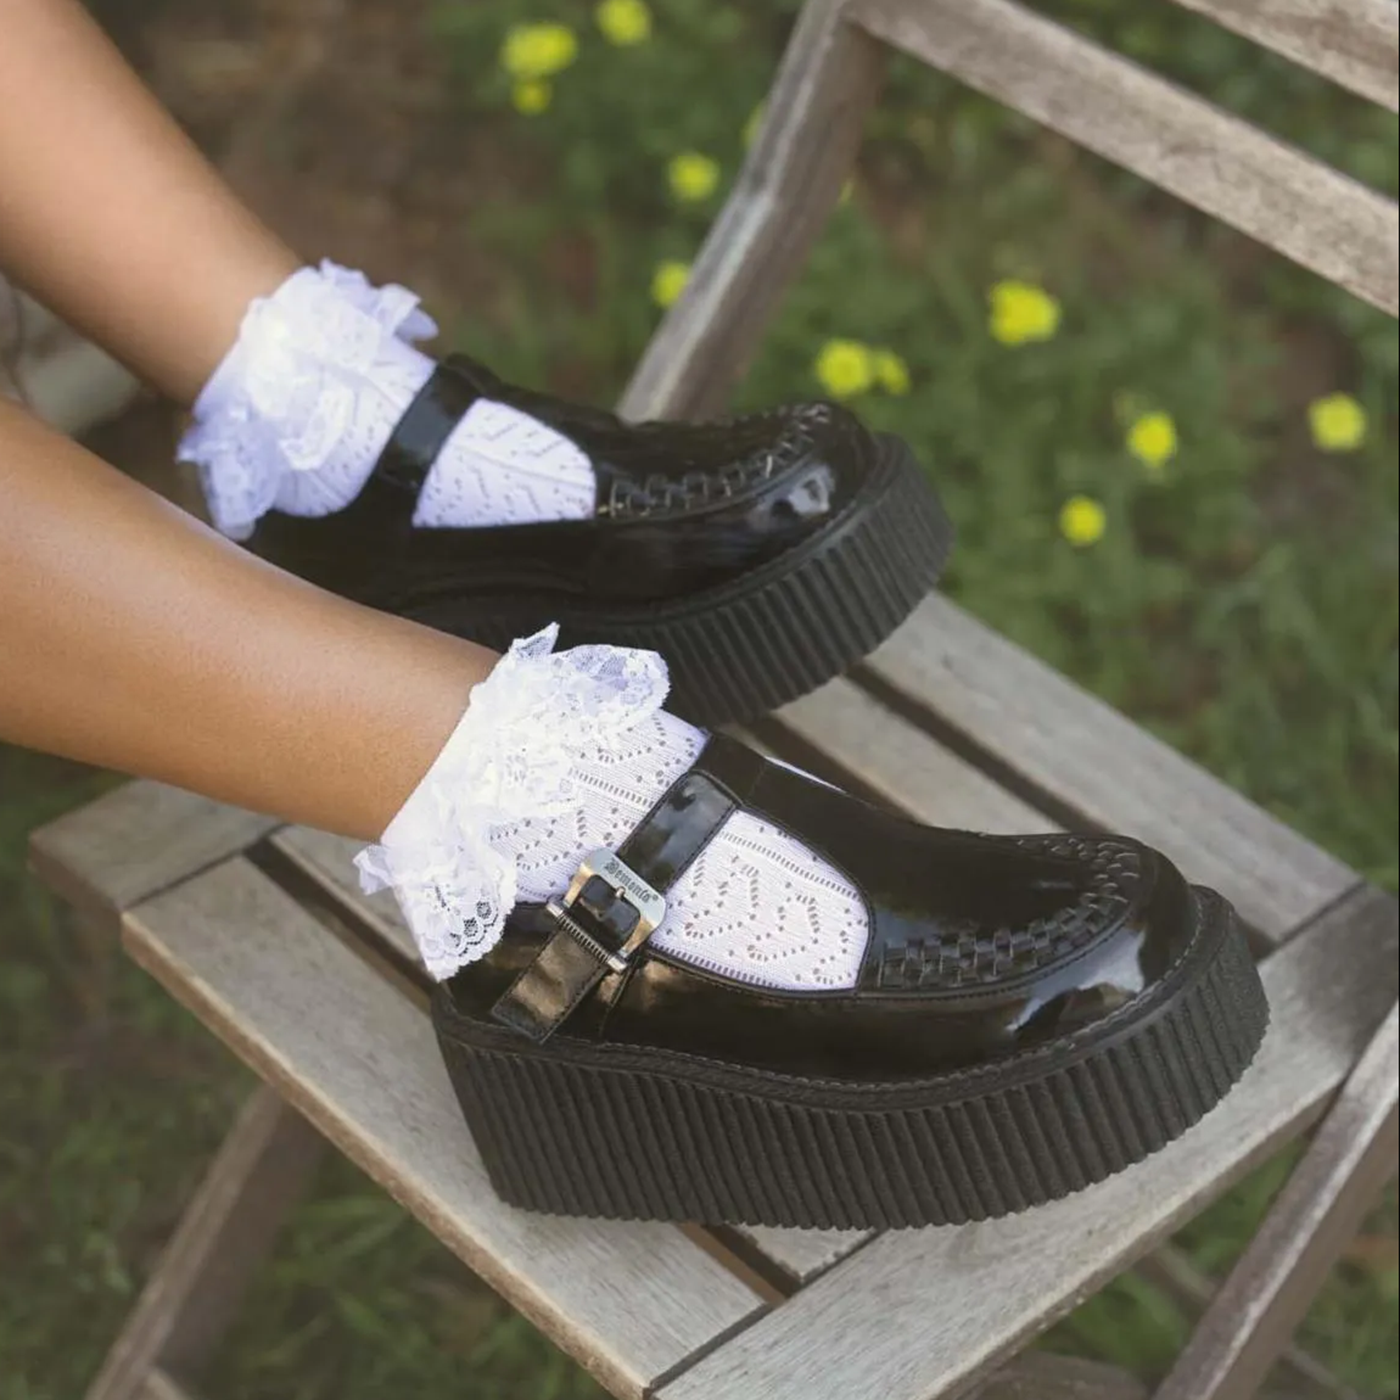 White Pointelle Heart Ruffle Ankle Socks – Dolls Kill